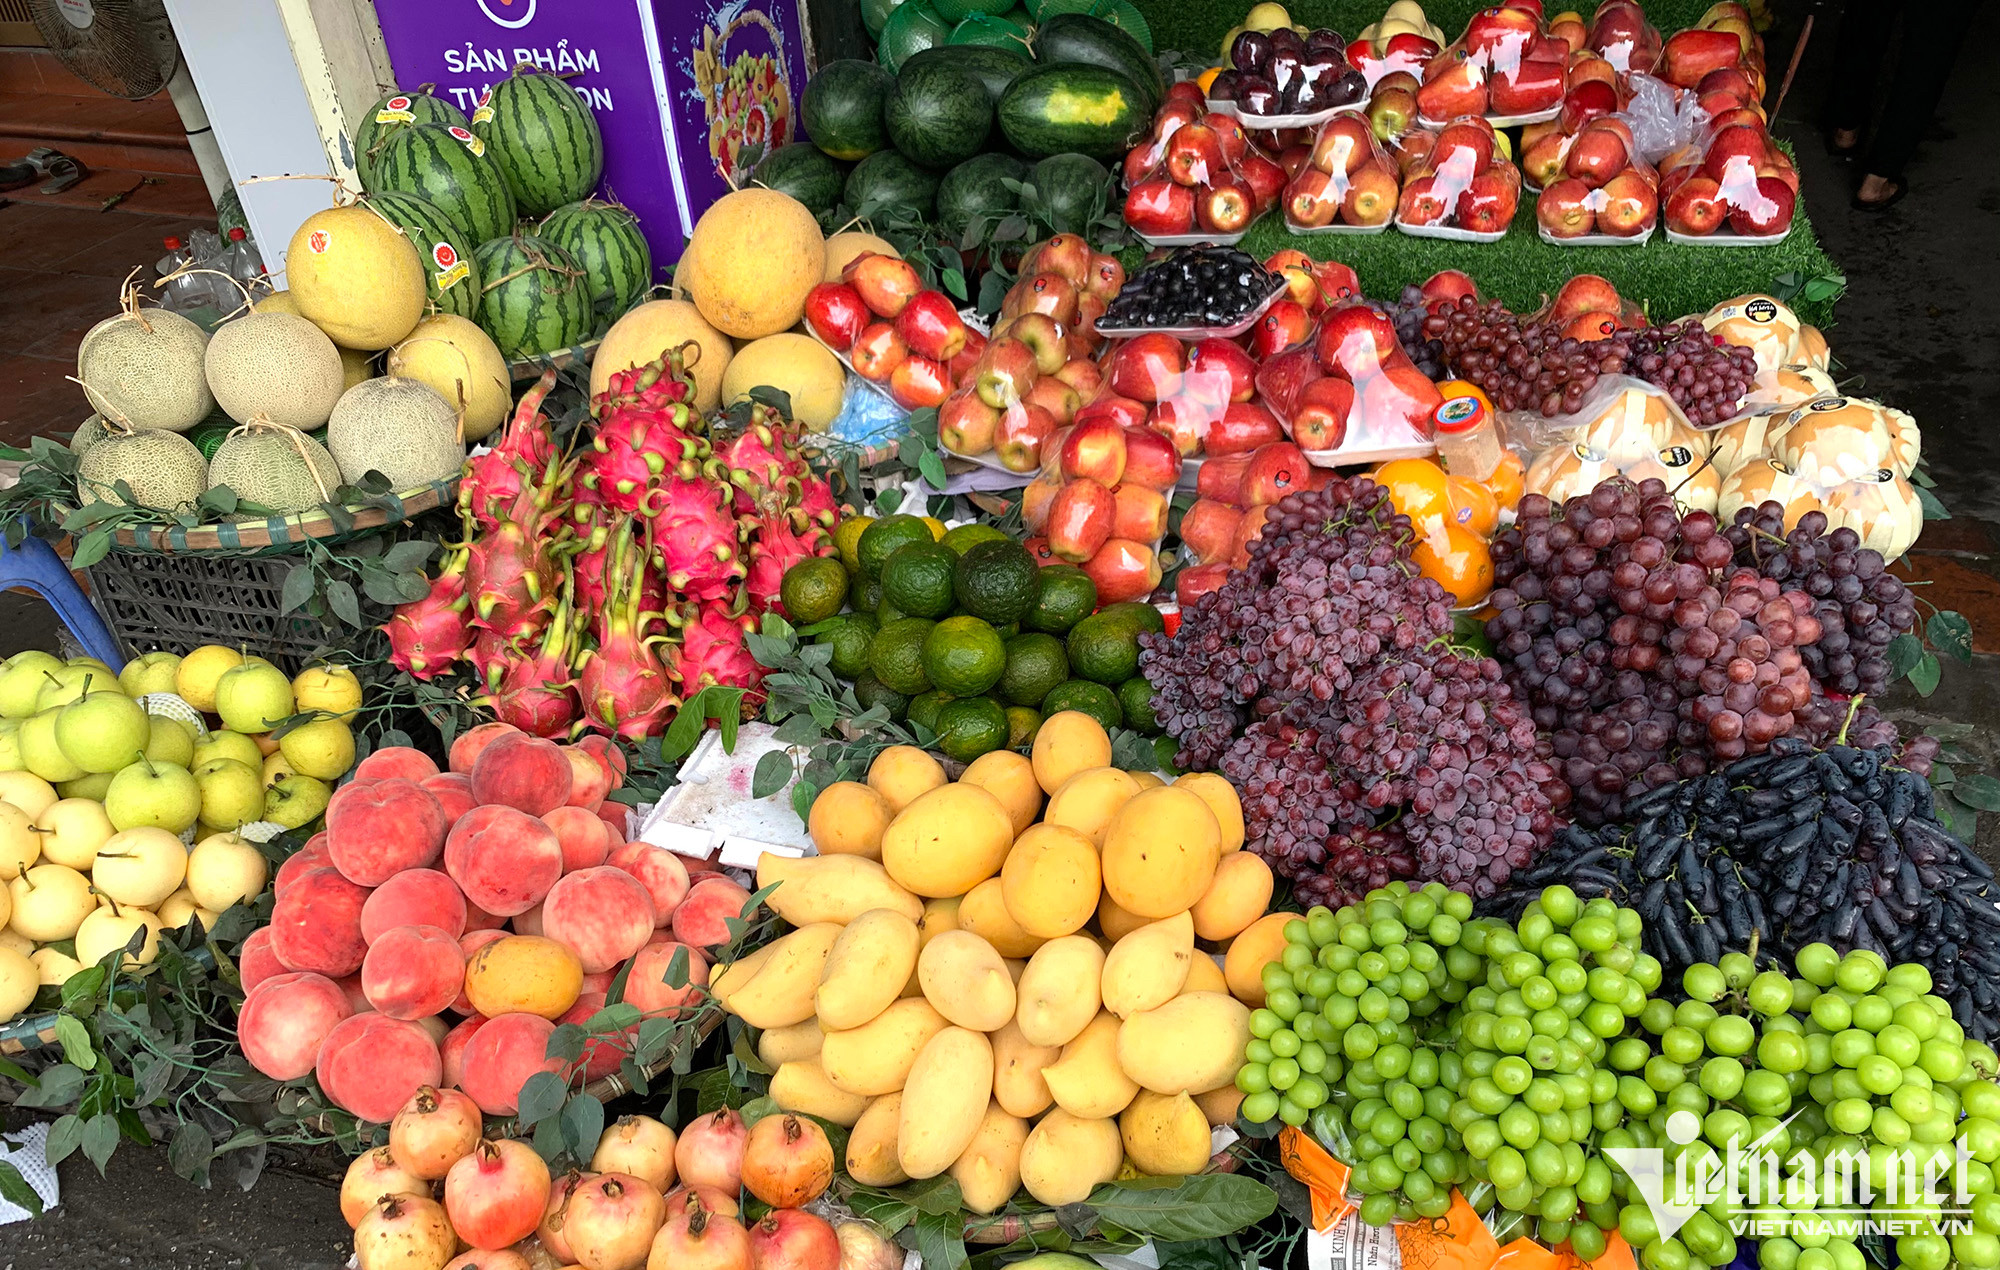 Hoa quả ngoại phủ kín sạp chợ, báo động đỏ trái cây Việt